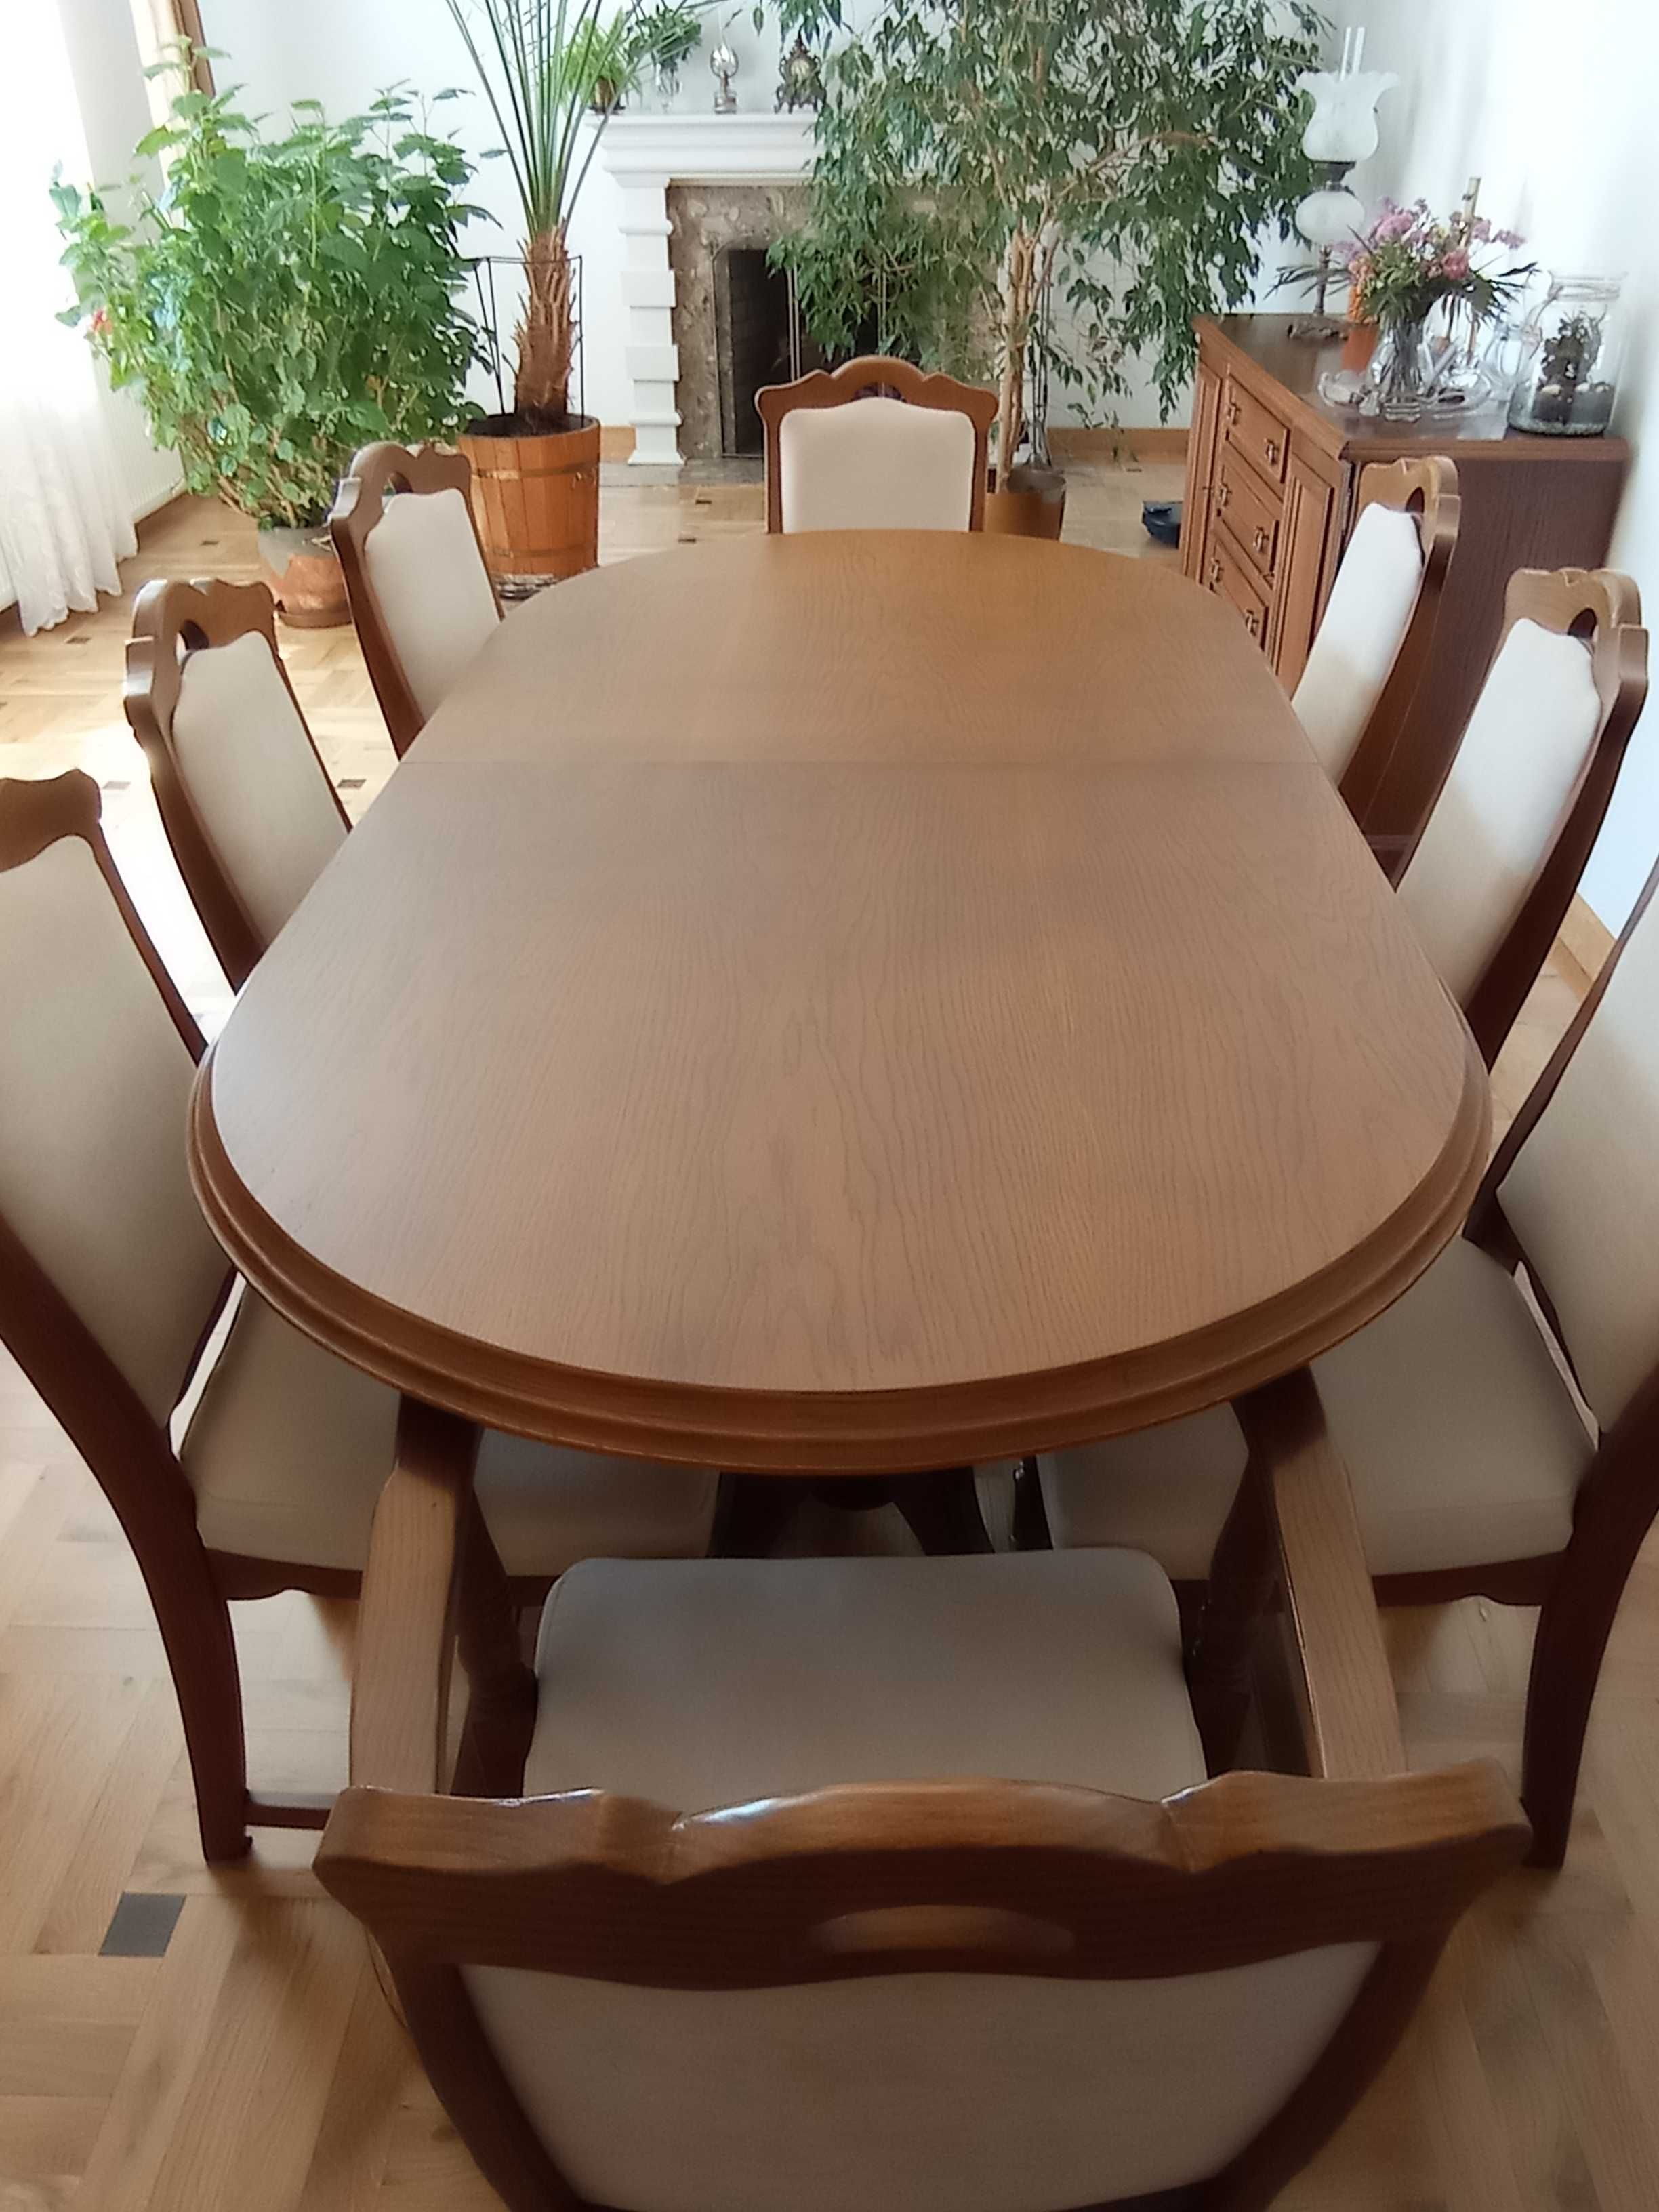 Sprzedam meble pokojowe Stół rozkładany dębowy + 8 krzeseł